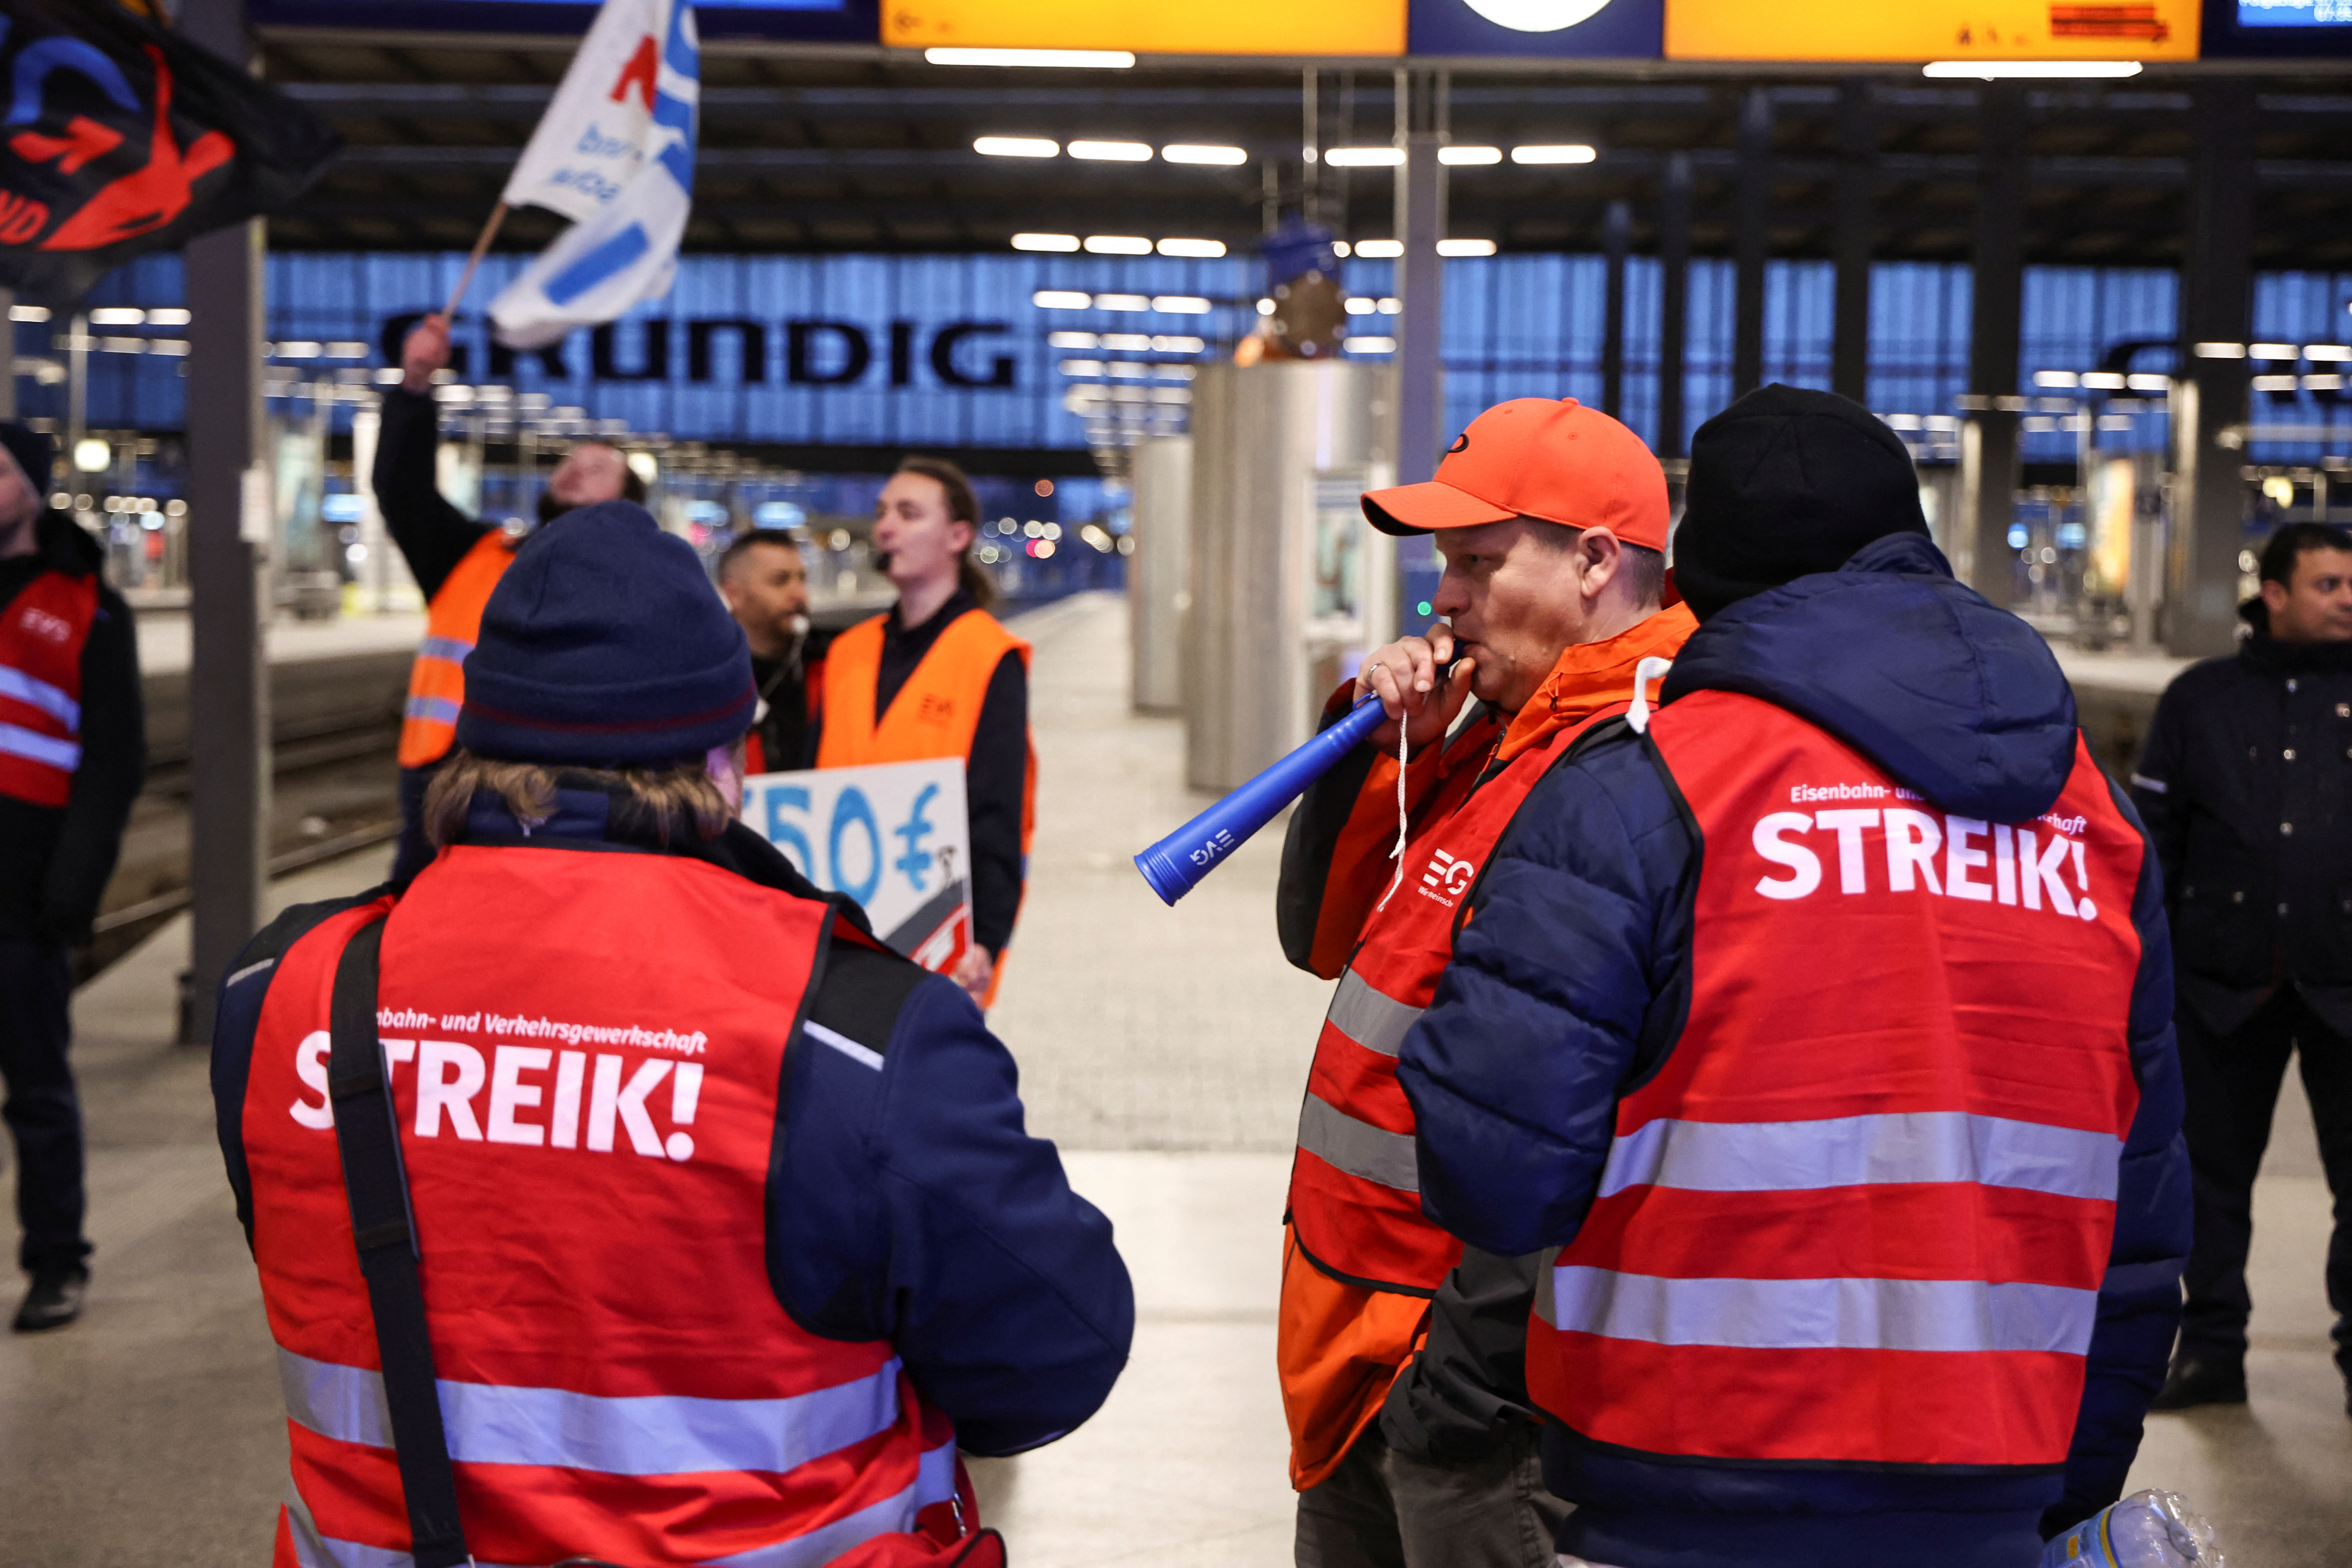 Méga-grève dans les transports en Allemagne pour augmenter les salaires